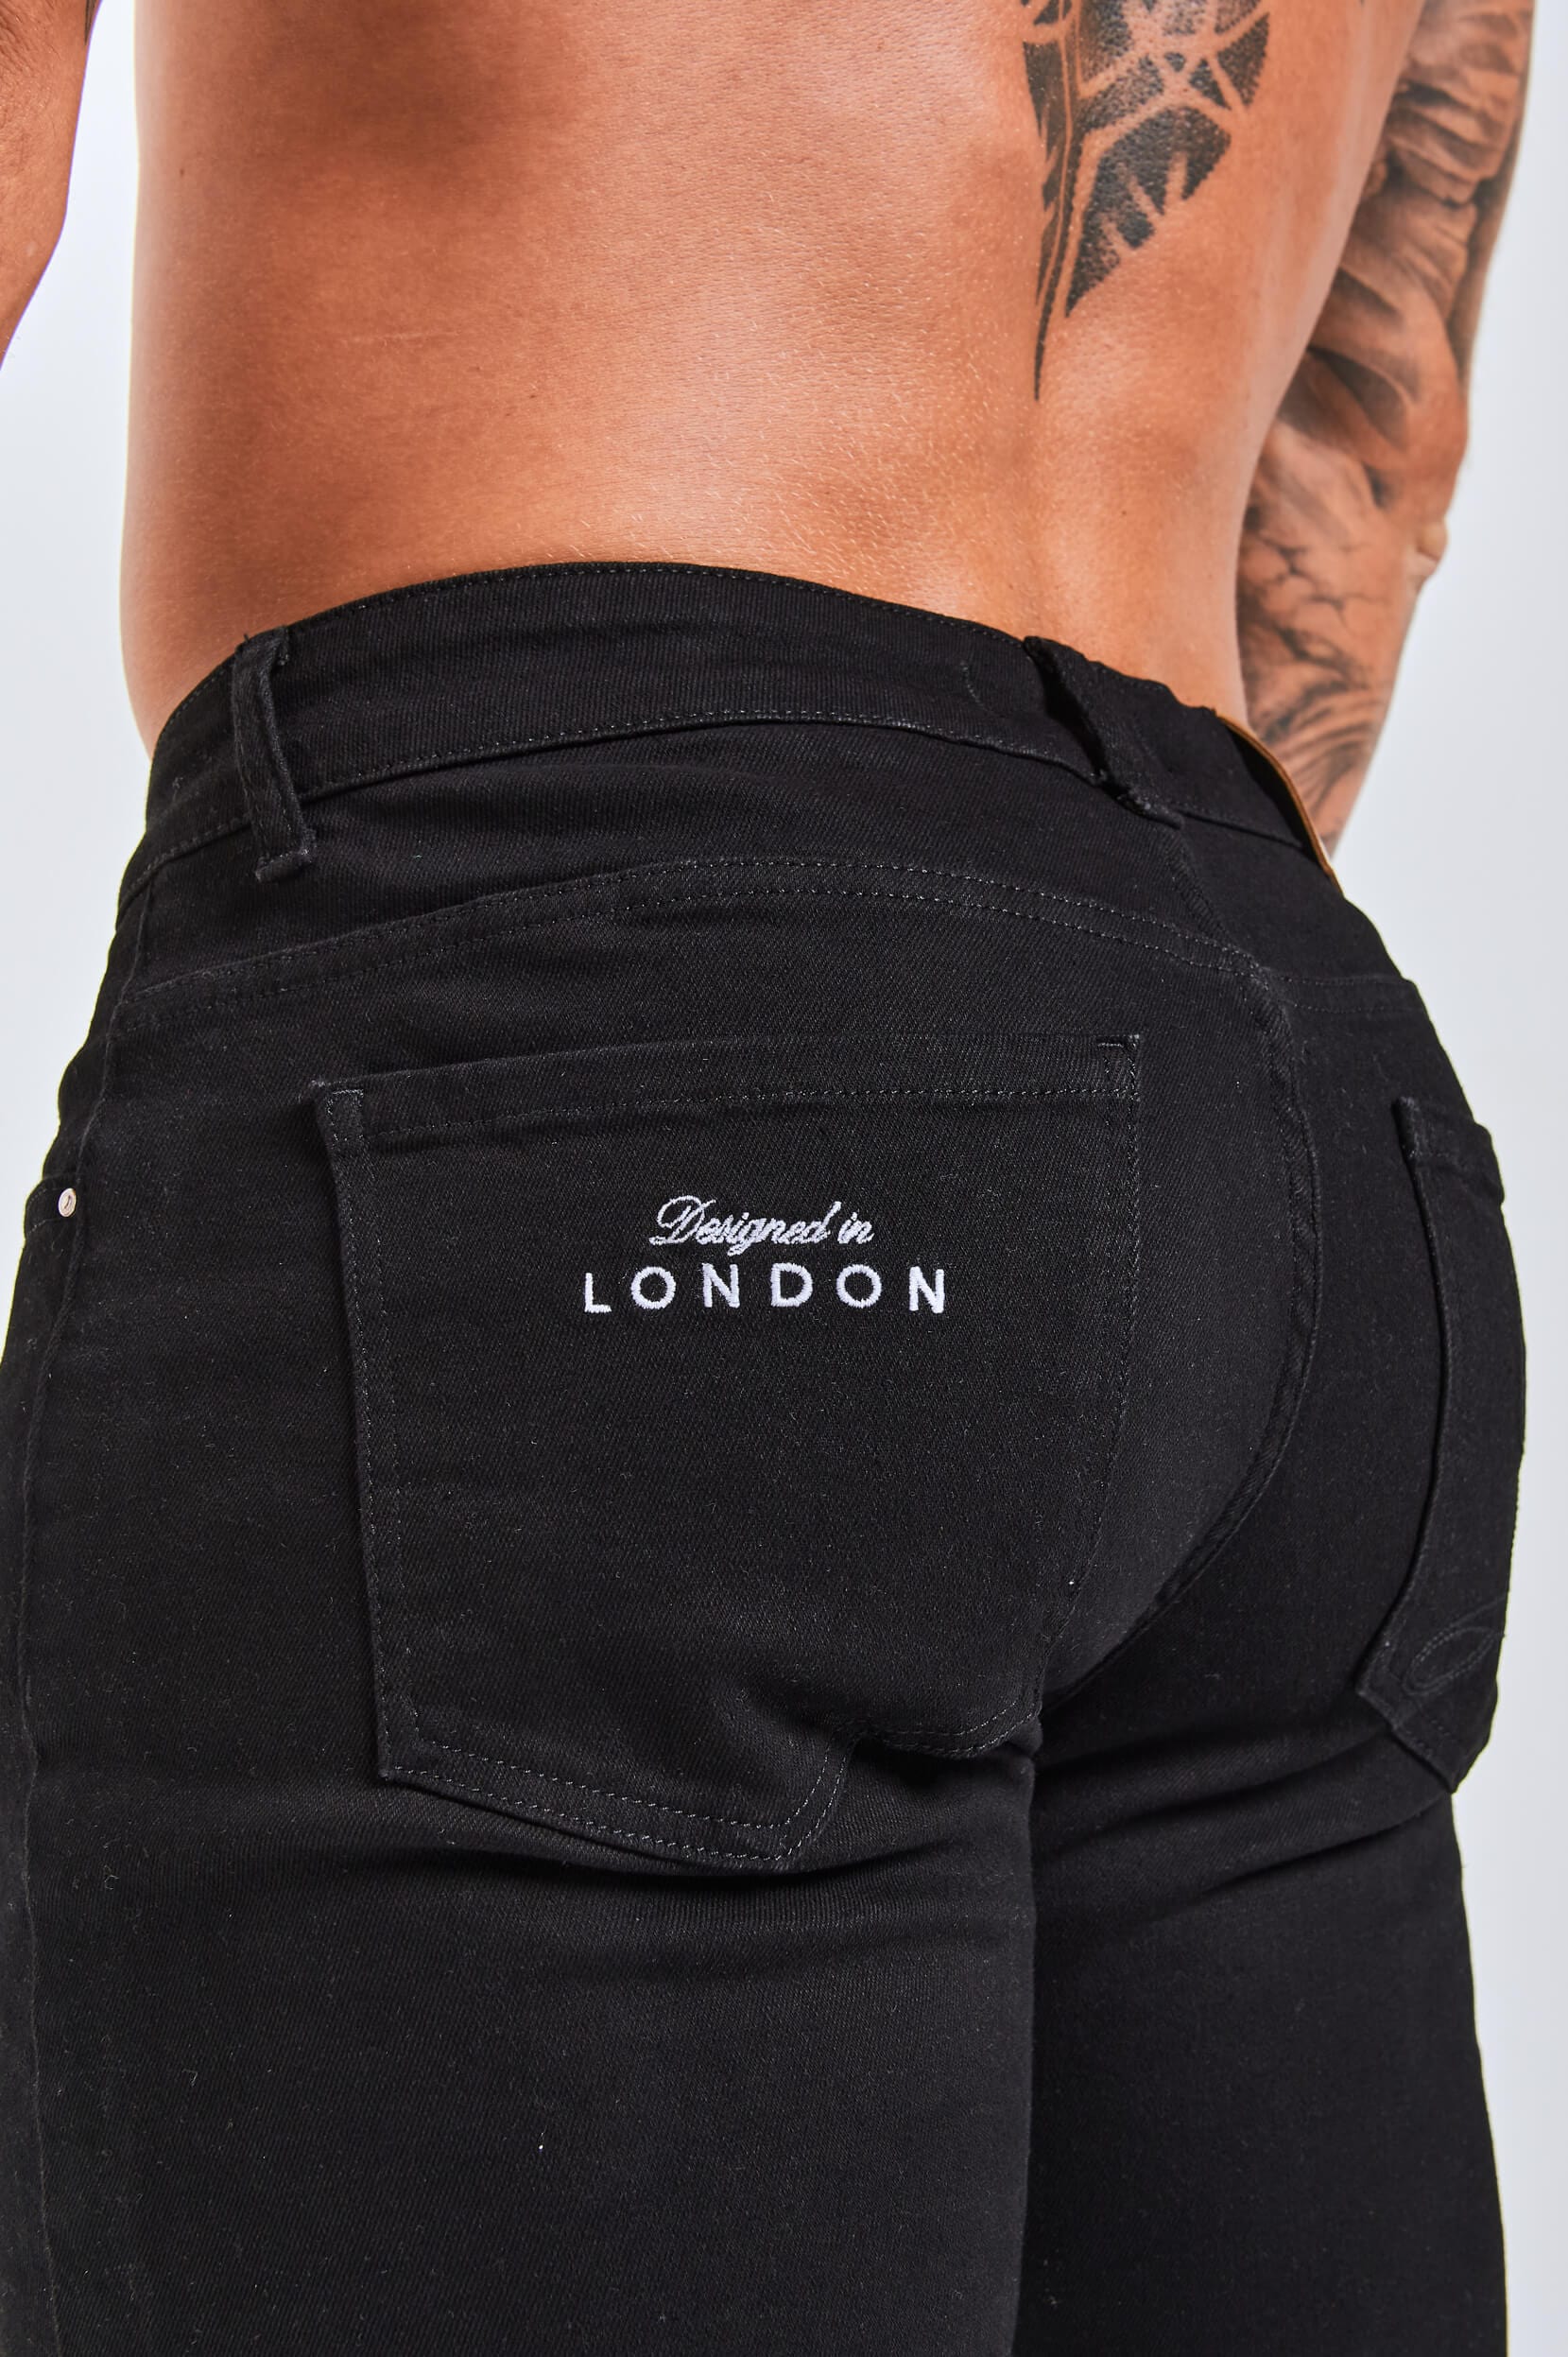 Legend London Jeans - slim 2.0 SLIM FIT JEANS 2.0 EMBROIDERED PRINTED DENIM - BLACK